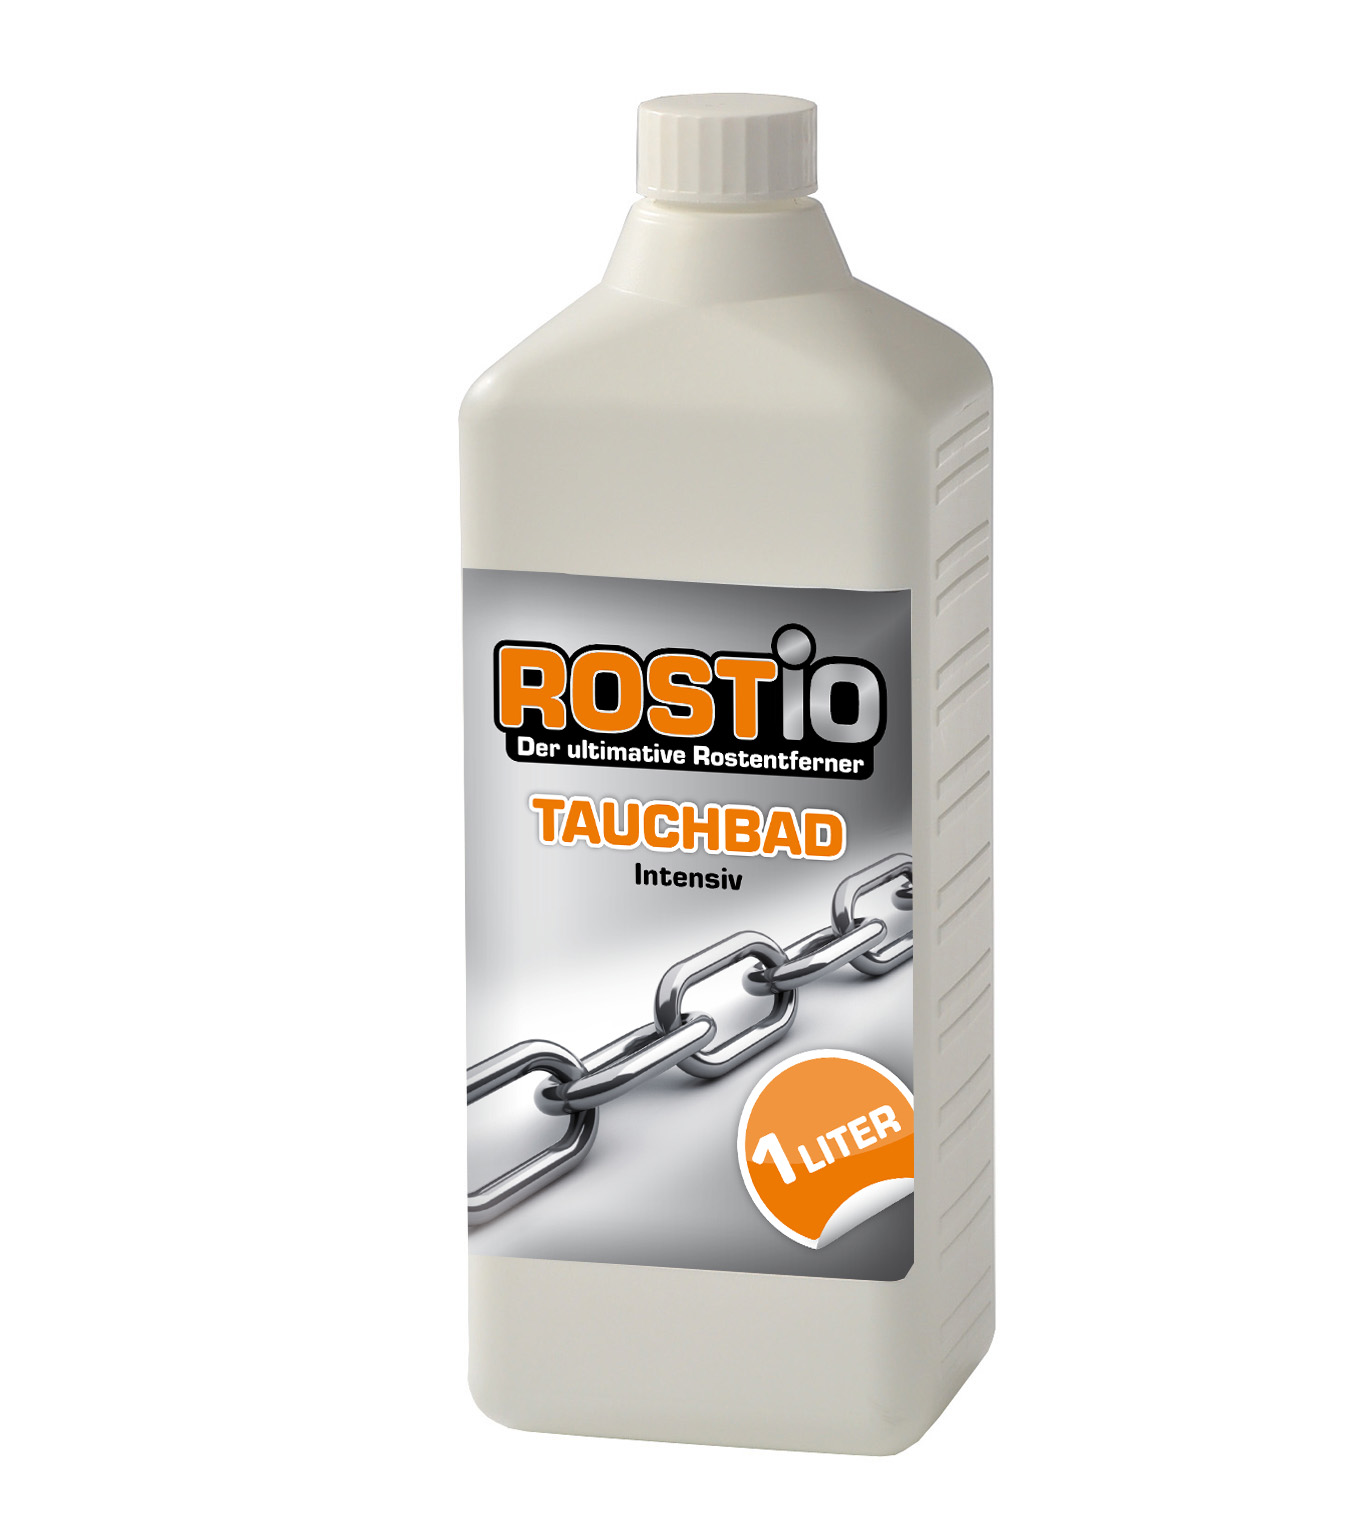 ROSTIO Tauchbad Intensiv 1 Liter, Rostio Tauchbad